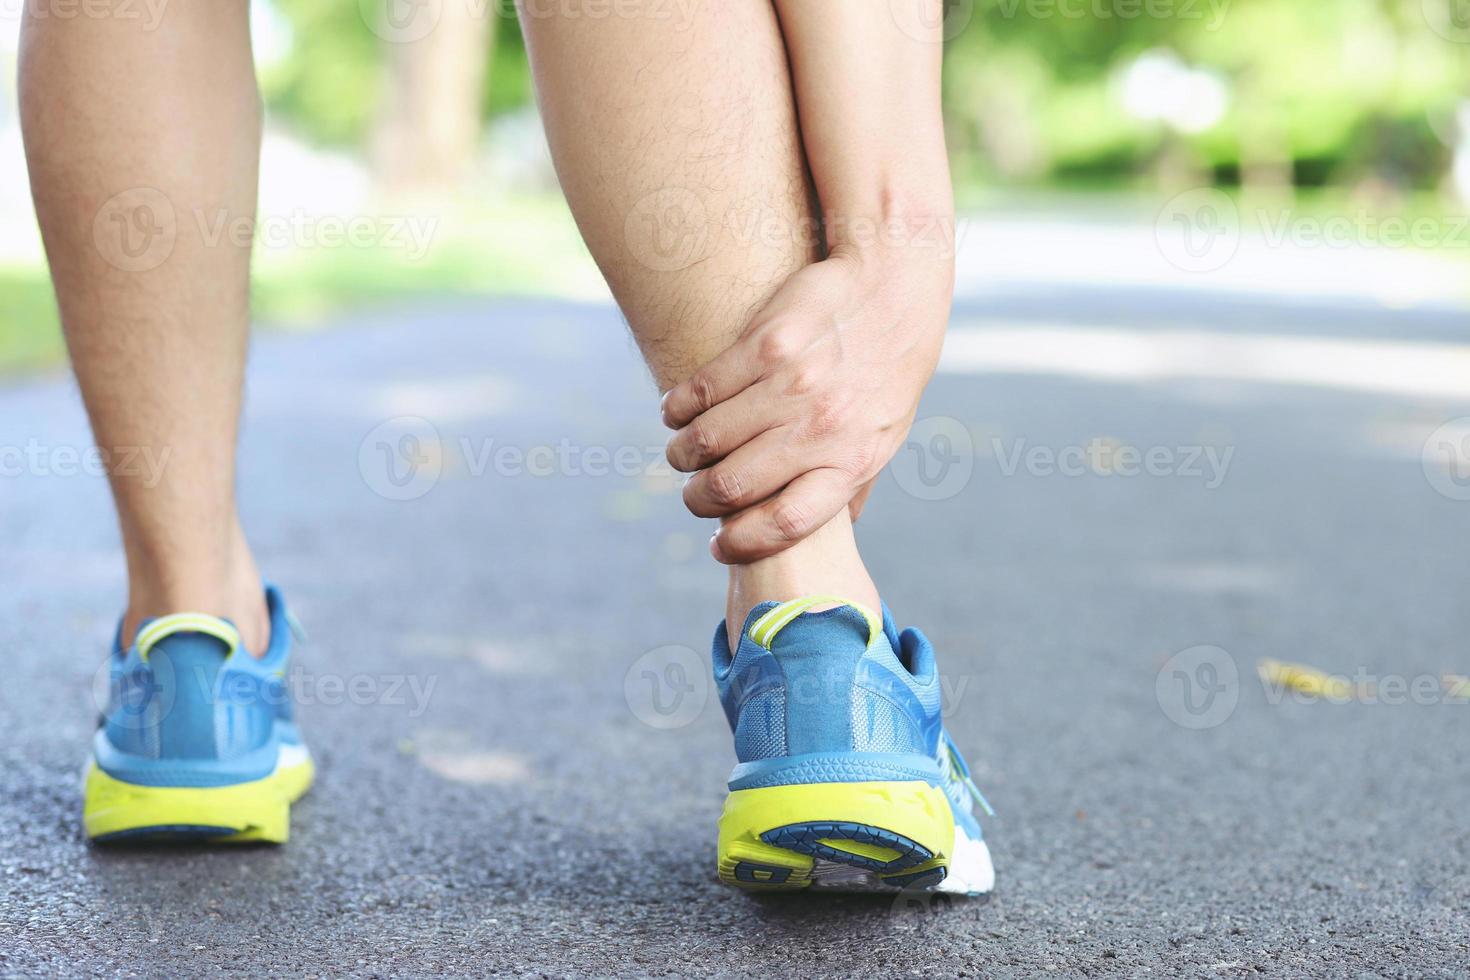 Läufer berührt schmerzhaft verdrehten oder gebrochenen Knöchel. Trainingsunfall eines Sportlers. sport lauf knöchel verstauchung verstauchung verursachen verletzung knie. und Schmerzen in den Beinknochen beim Laufen im Freien im Park. foto